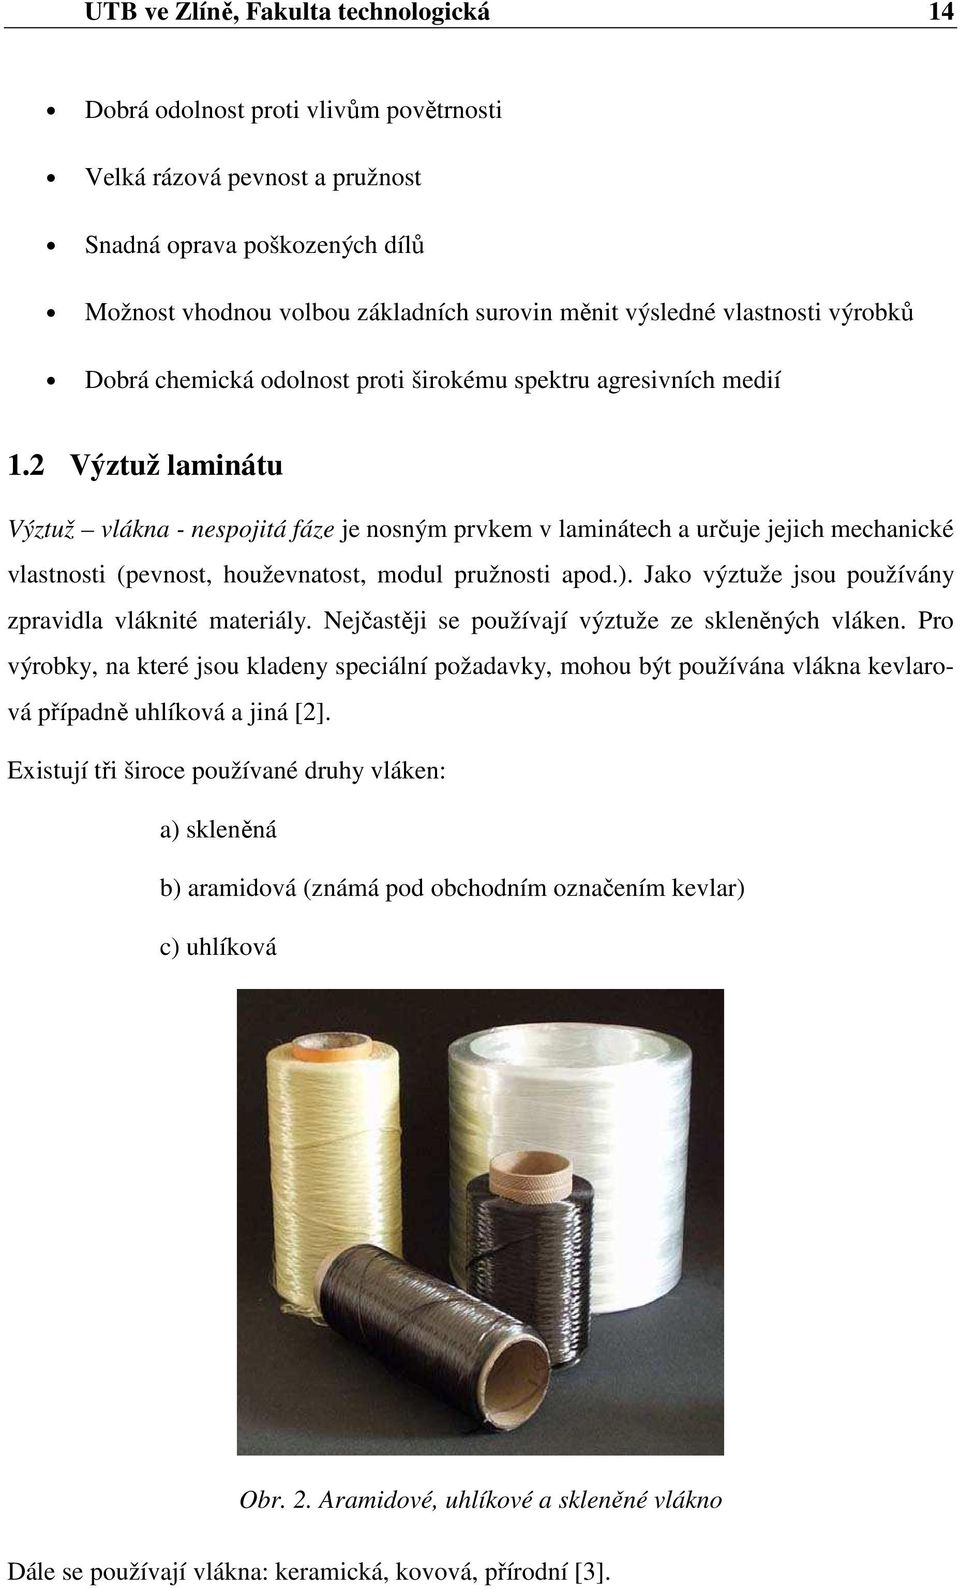 2 Výztuž laminátu Výztuž vlákna - nespojitá fáze je nosným prvkem v laminátech a určuje jejich mechanické vlastnosti (pevnost, houževnatost, modul pružnosti apod.).